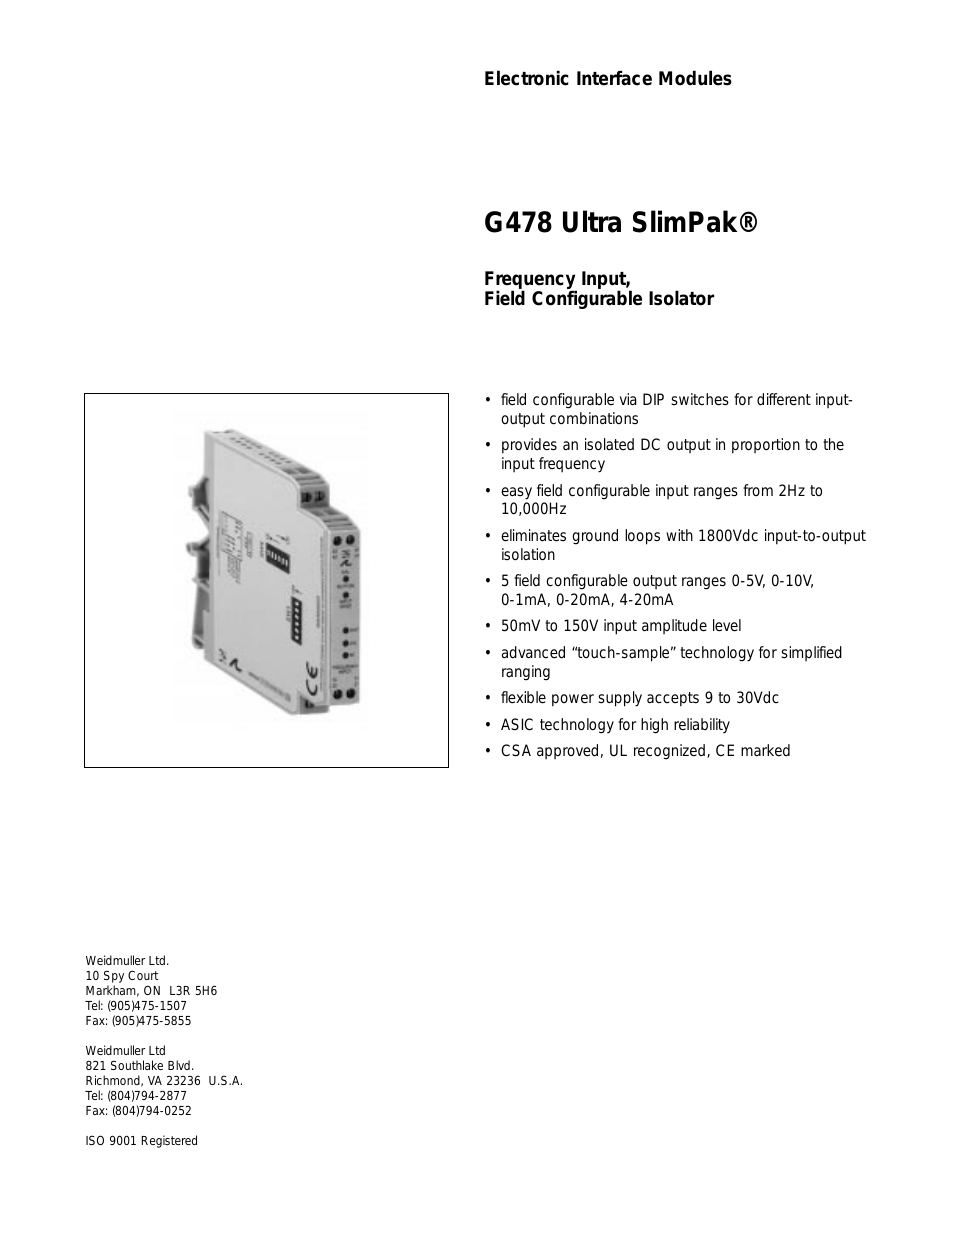 G478 Ultra SlimPak